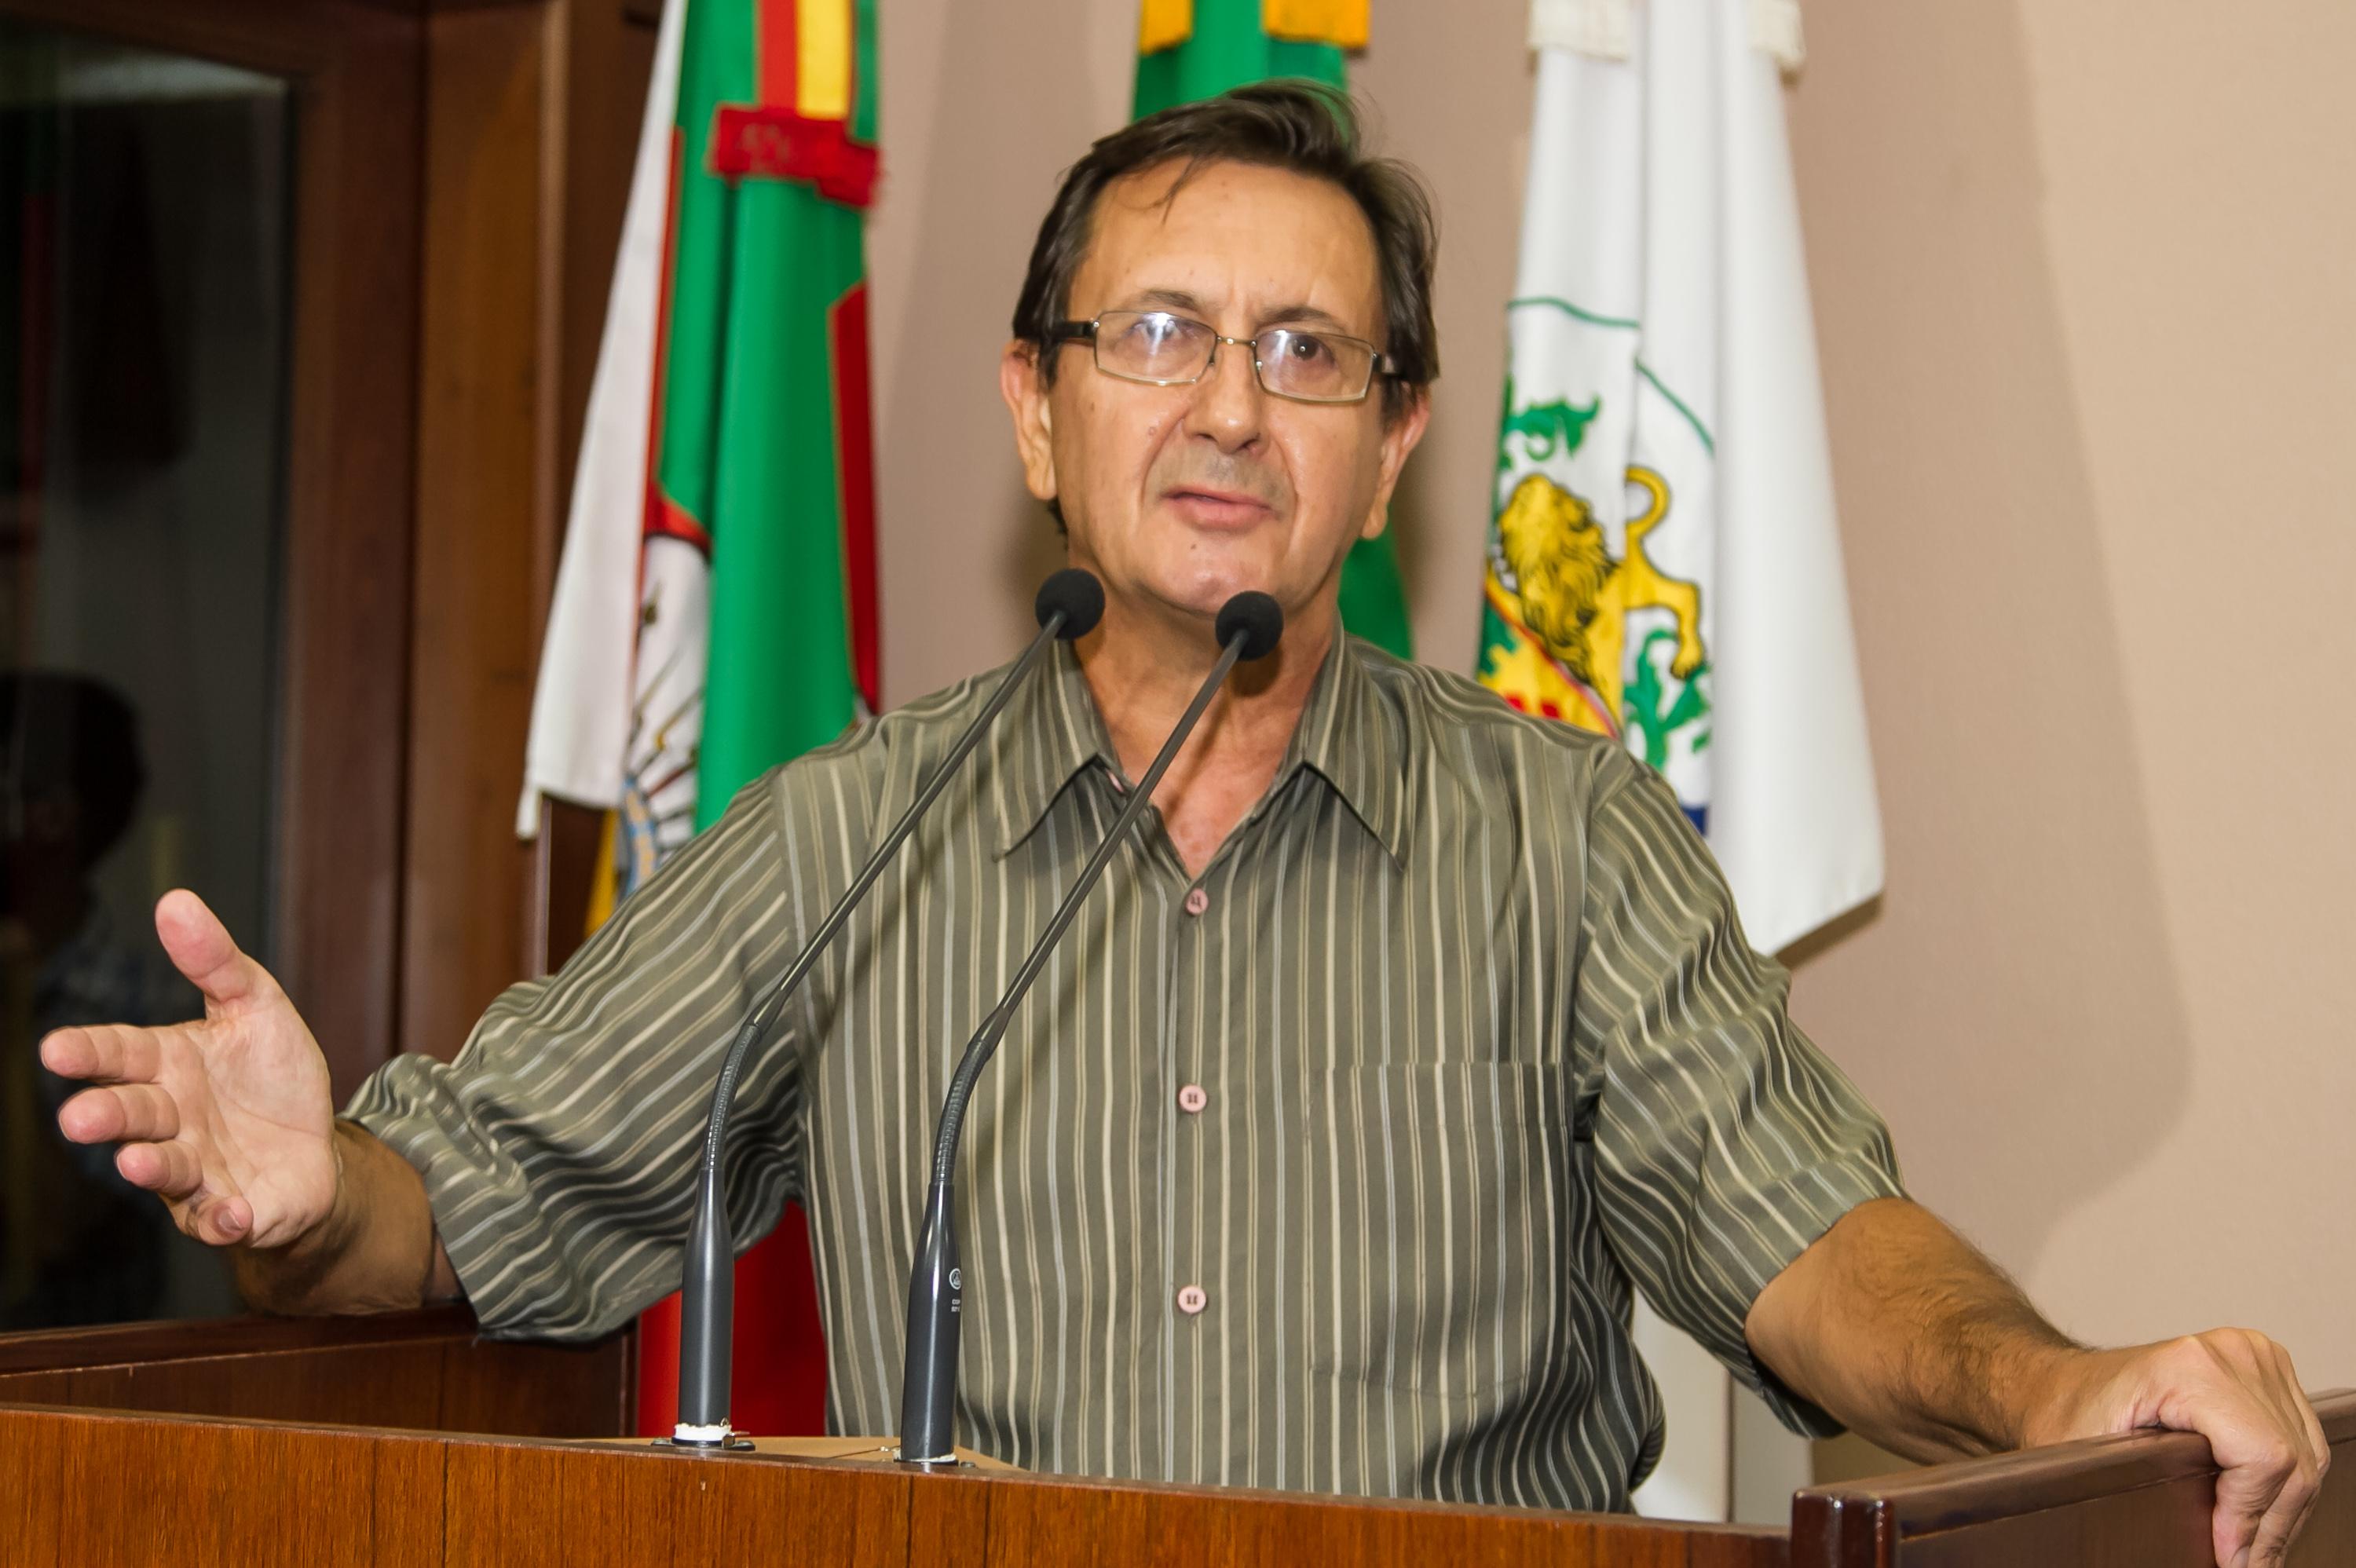 Debatido projeto para tornar de utilidade pública a União Brasileira de Trovadores Seção de Caxias do Sul